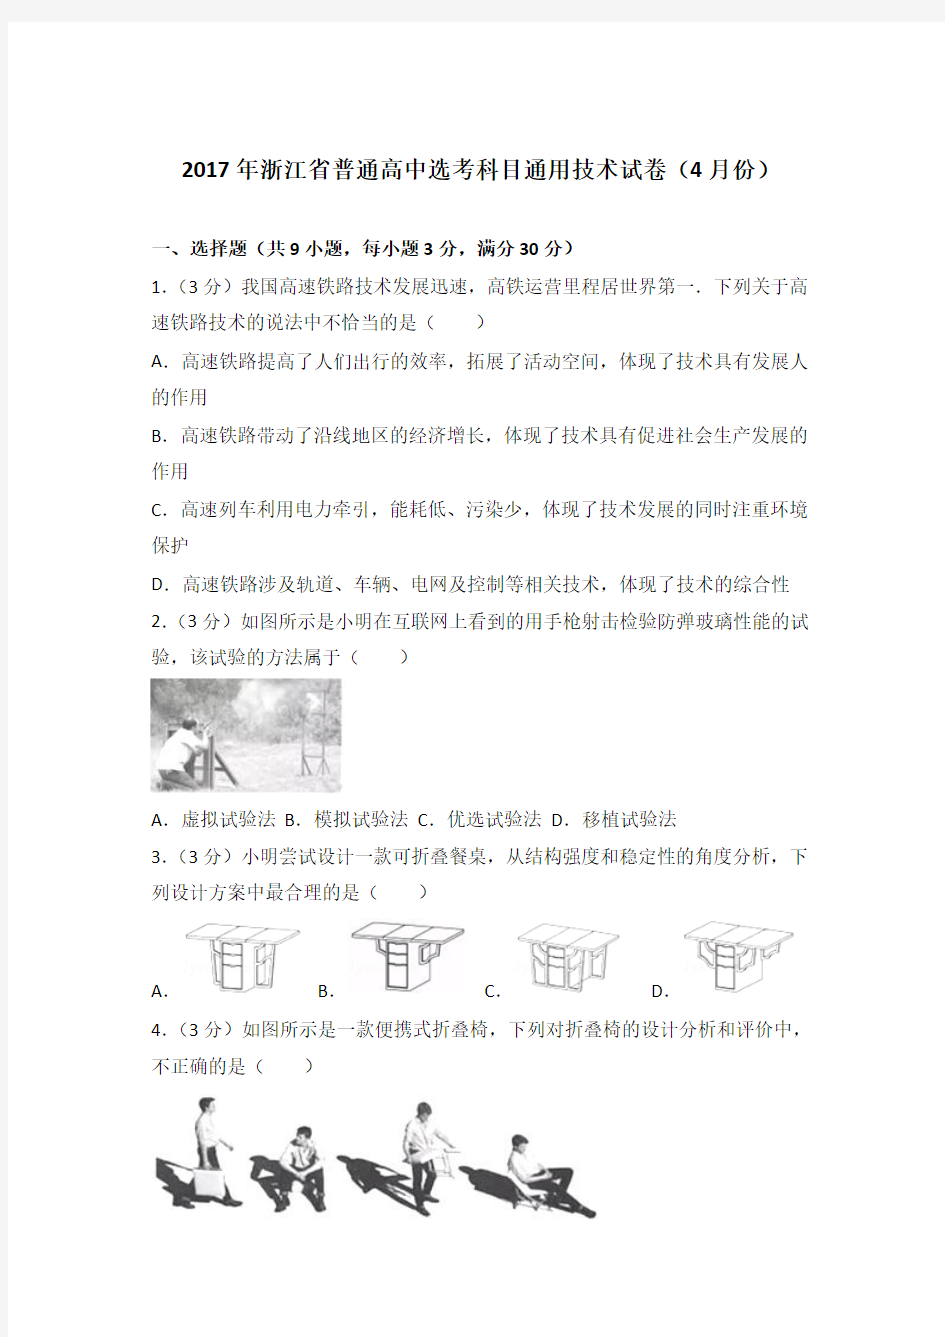 2017年浙江省普通高中选考科目通用技术试卷(4月份)及答案